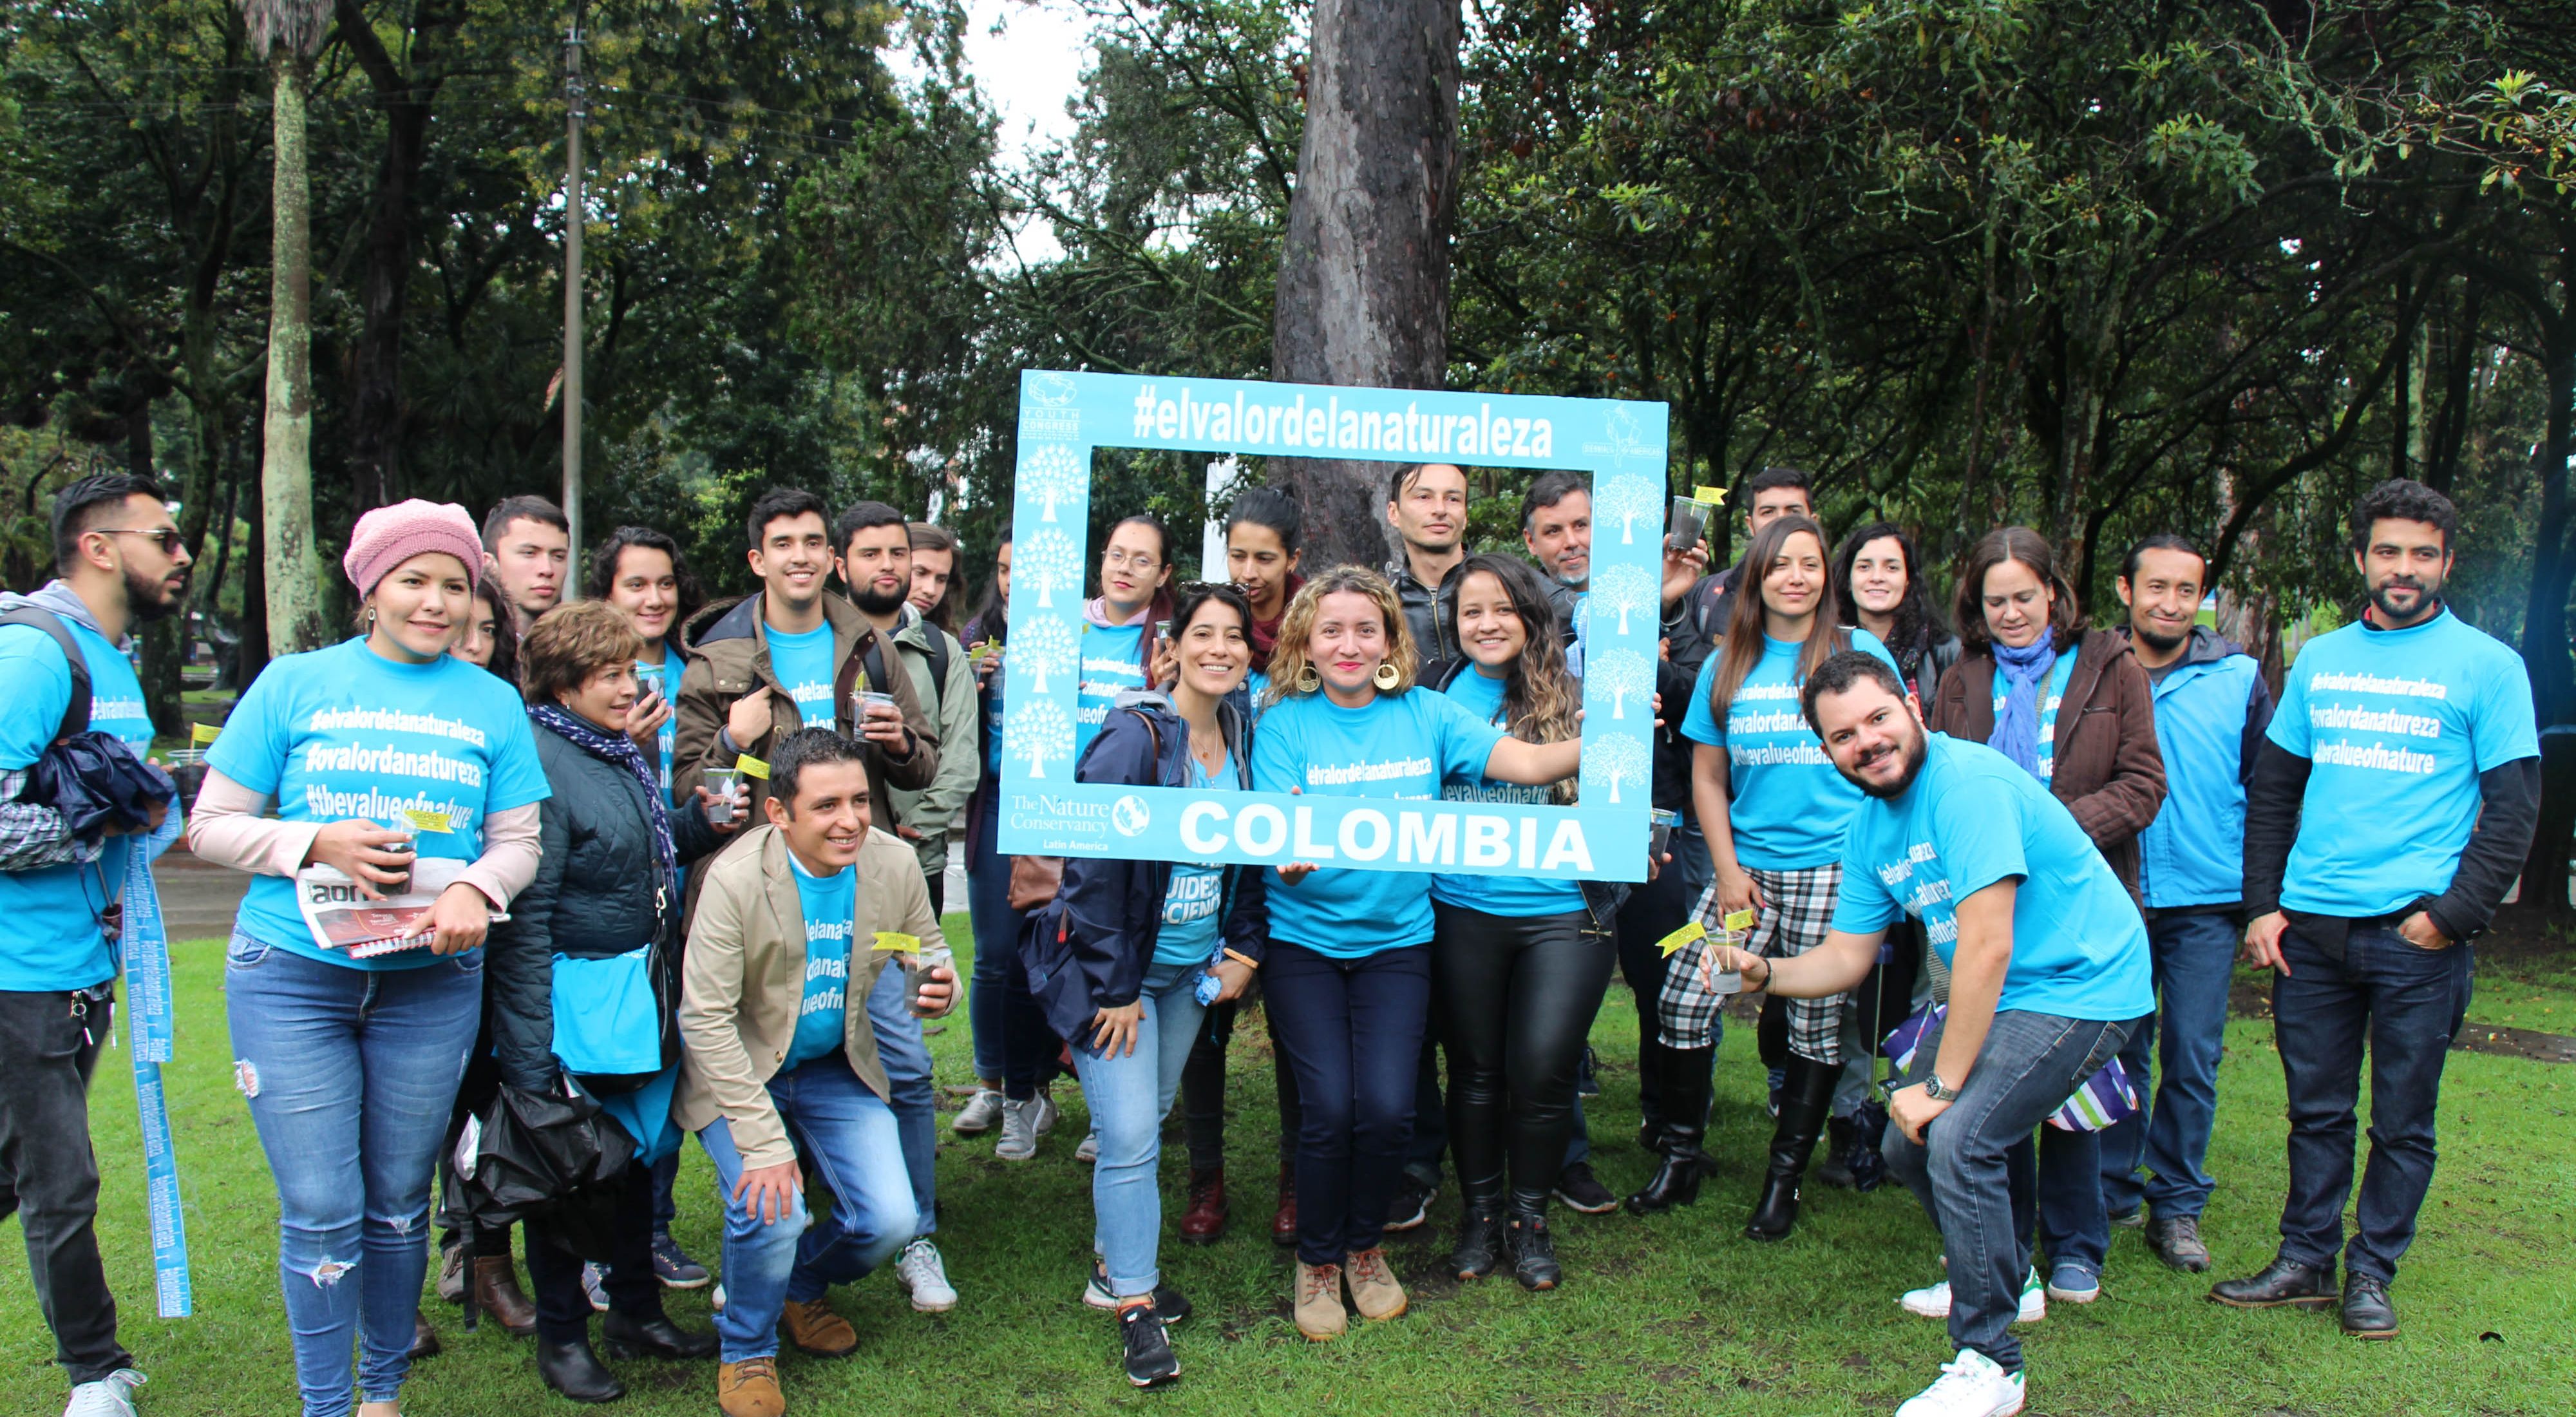 en acción en Bogotá durante la campaña #TheValueOfNature en junio 2019.